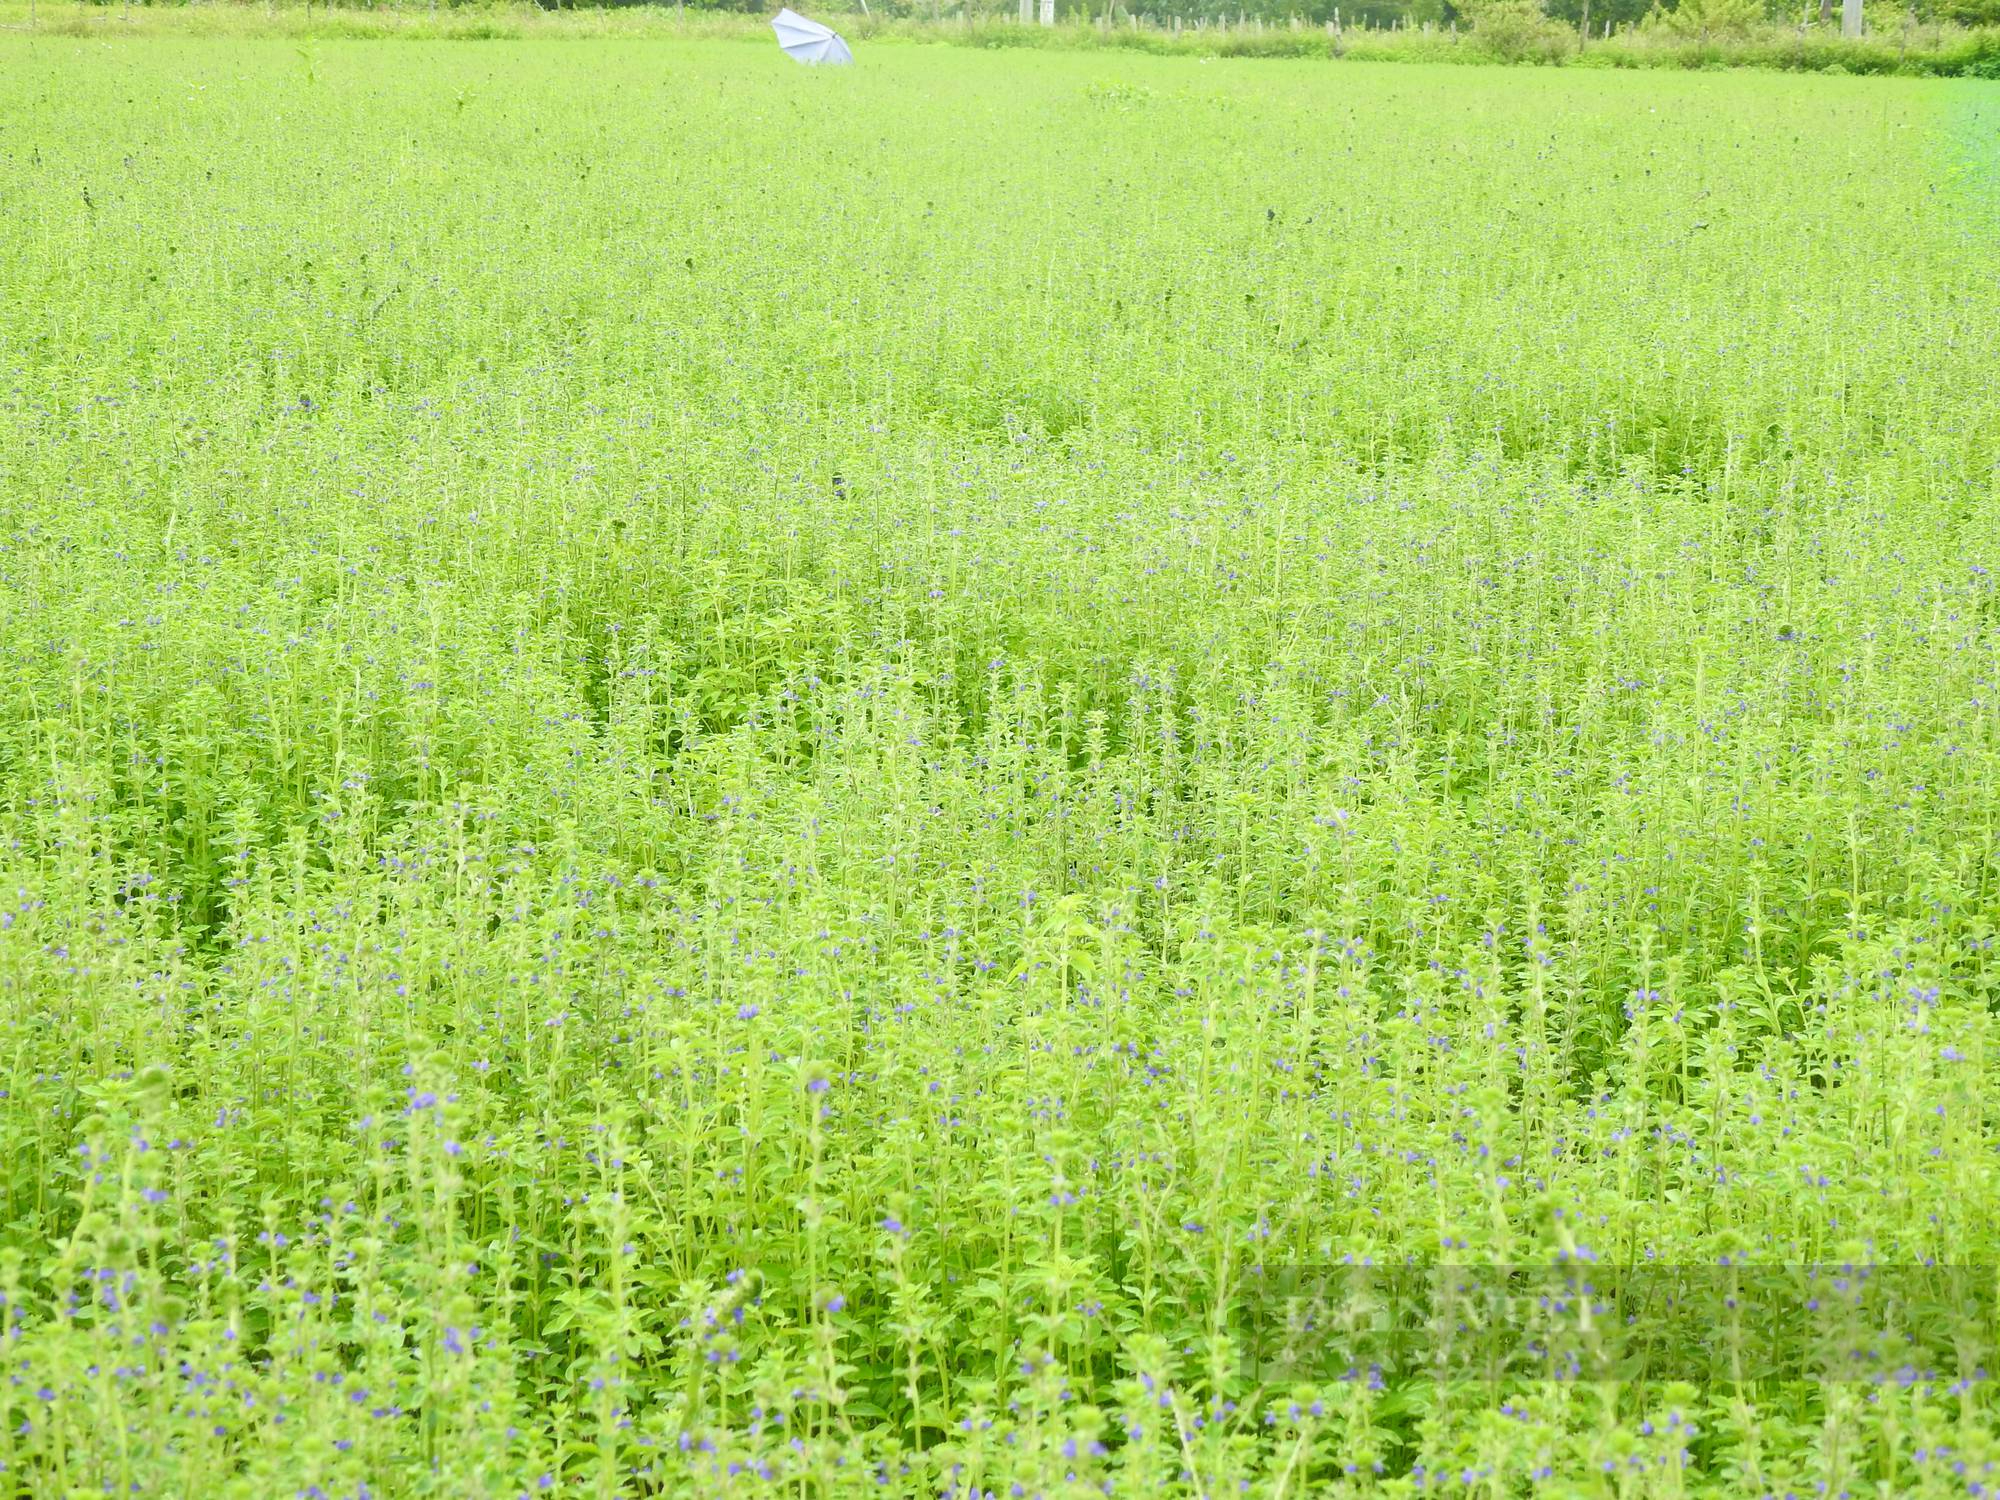 Sắc tím lãng mạn cánh đồng hoa nhân trần ở huyện Yên Thành (Nghệ An) - Ảnh 10.